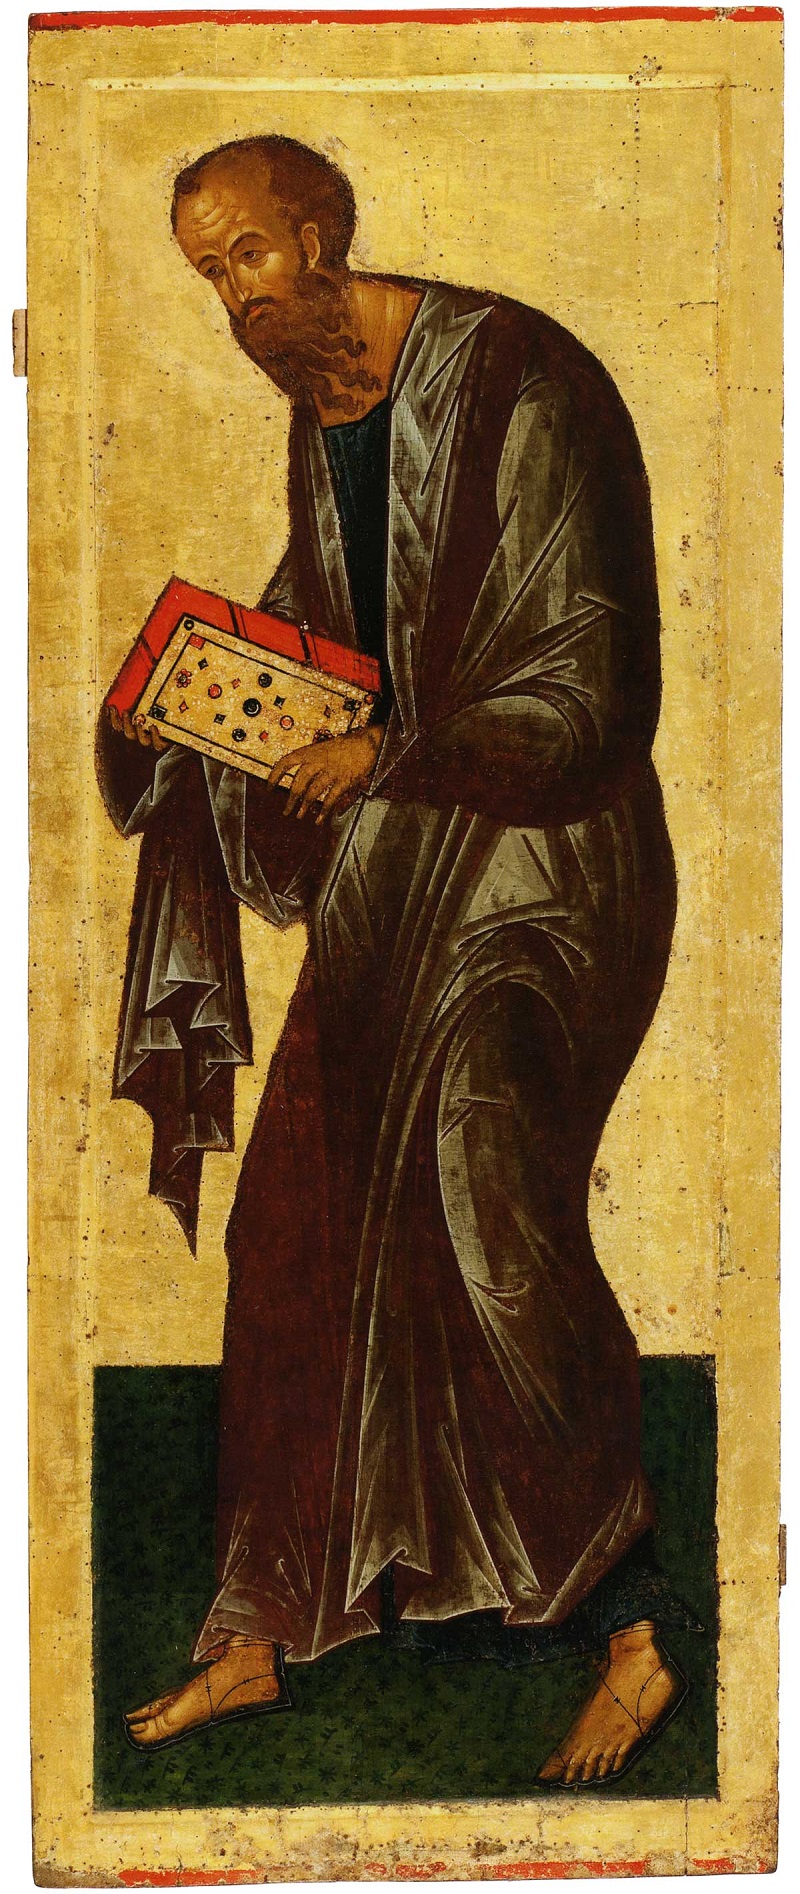 Апостол Петр. Конец XIV в. Государственный Русский музей, Санкт-Петербург